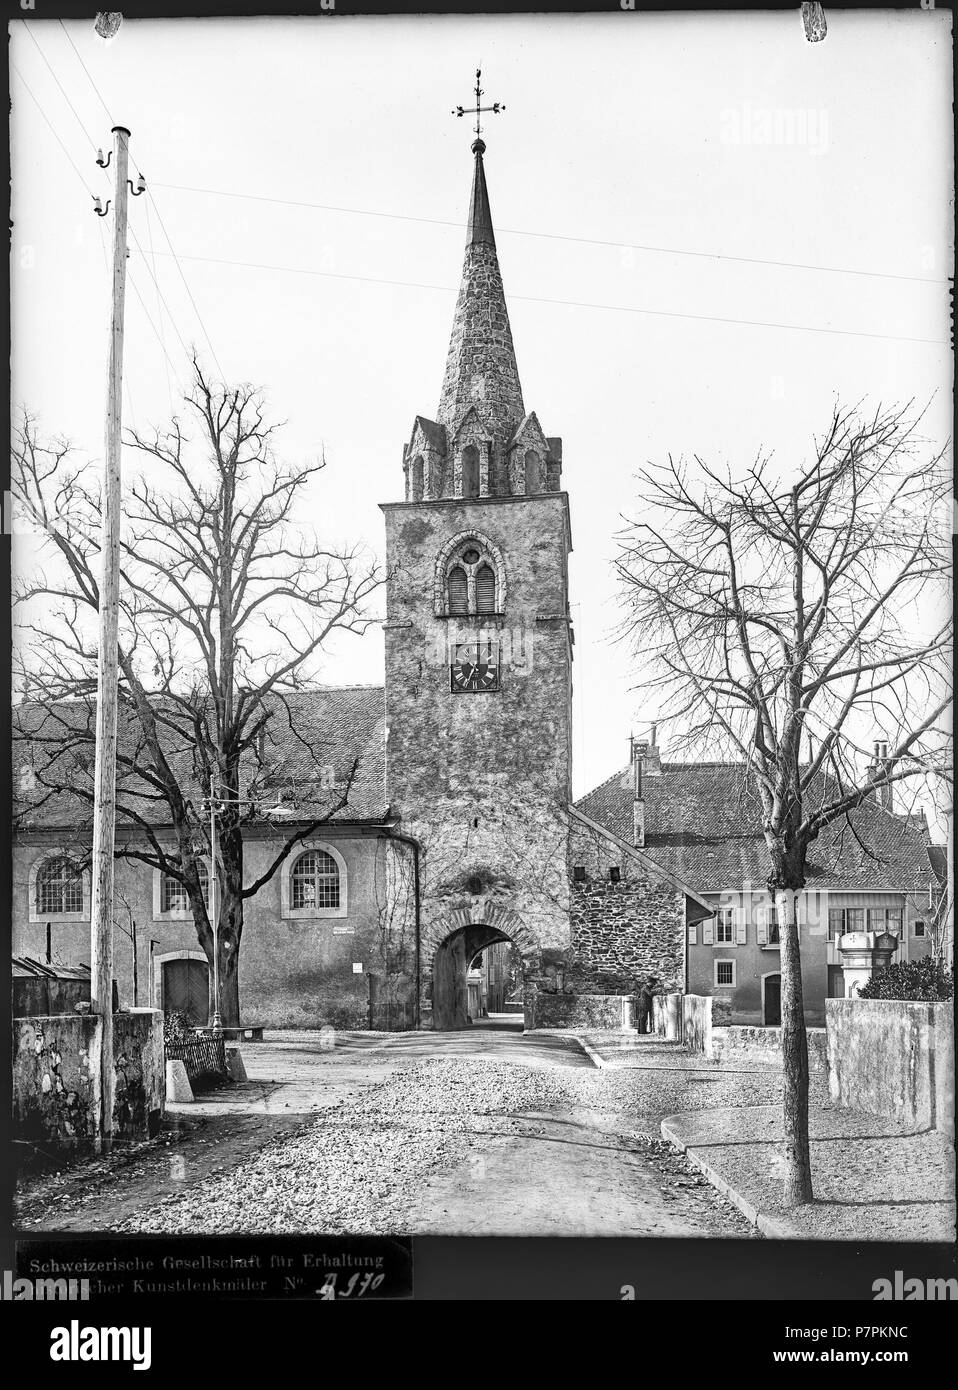 La Tour-de-Peilz, Eglise, vue partielle; Vue partielle de l'église Saint-Théodule avec son clocher, vue du nord-est. 1899 74 CH-NB - La Tour-de-Peilz, Eglise, vue partielle - Collection Max van Berchem - EAD-7560 Stock Photo